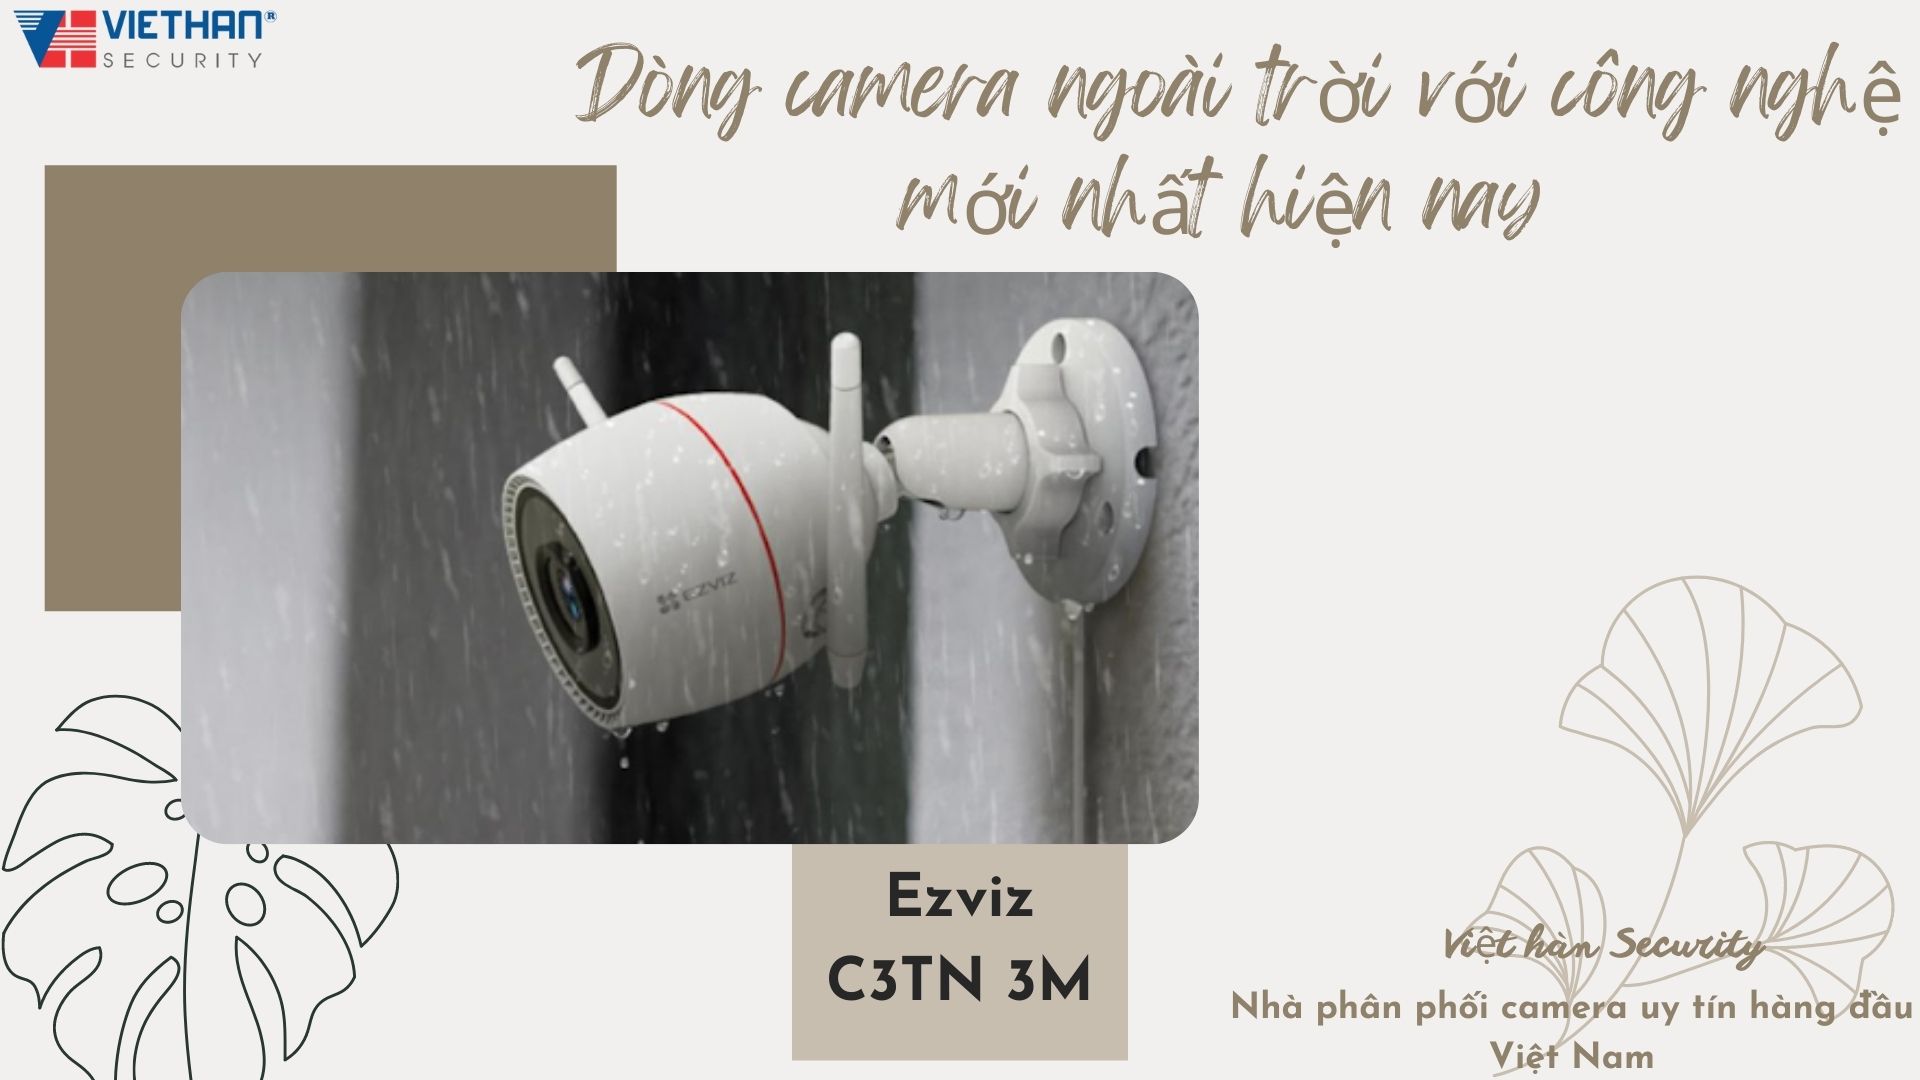 Ezviz C3TN 3M dòng camera ngoài trời với công nghệ mới nhất hiện nay